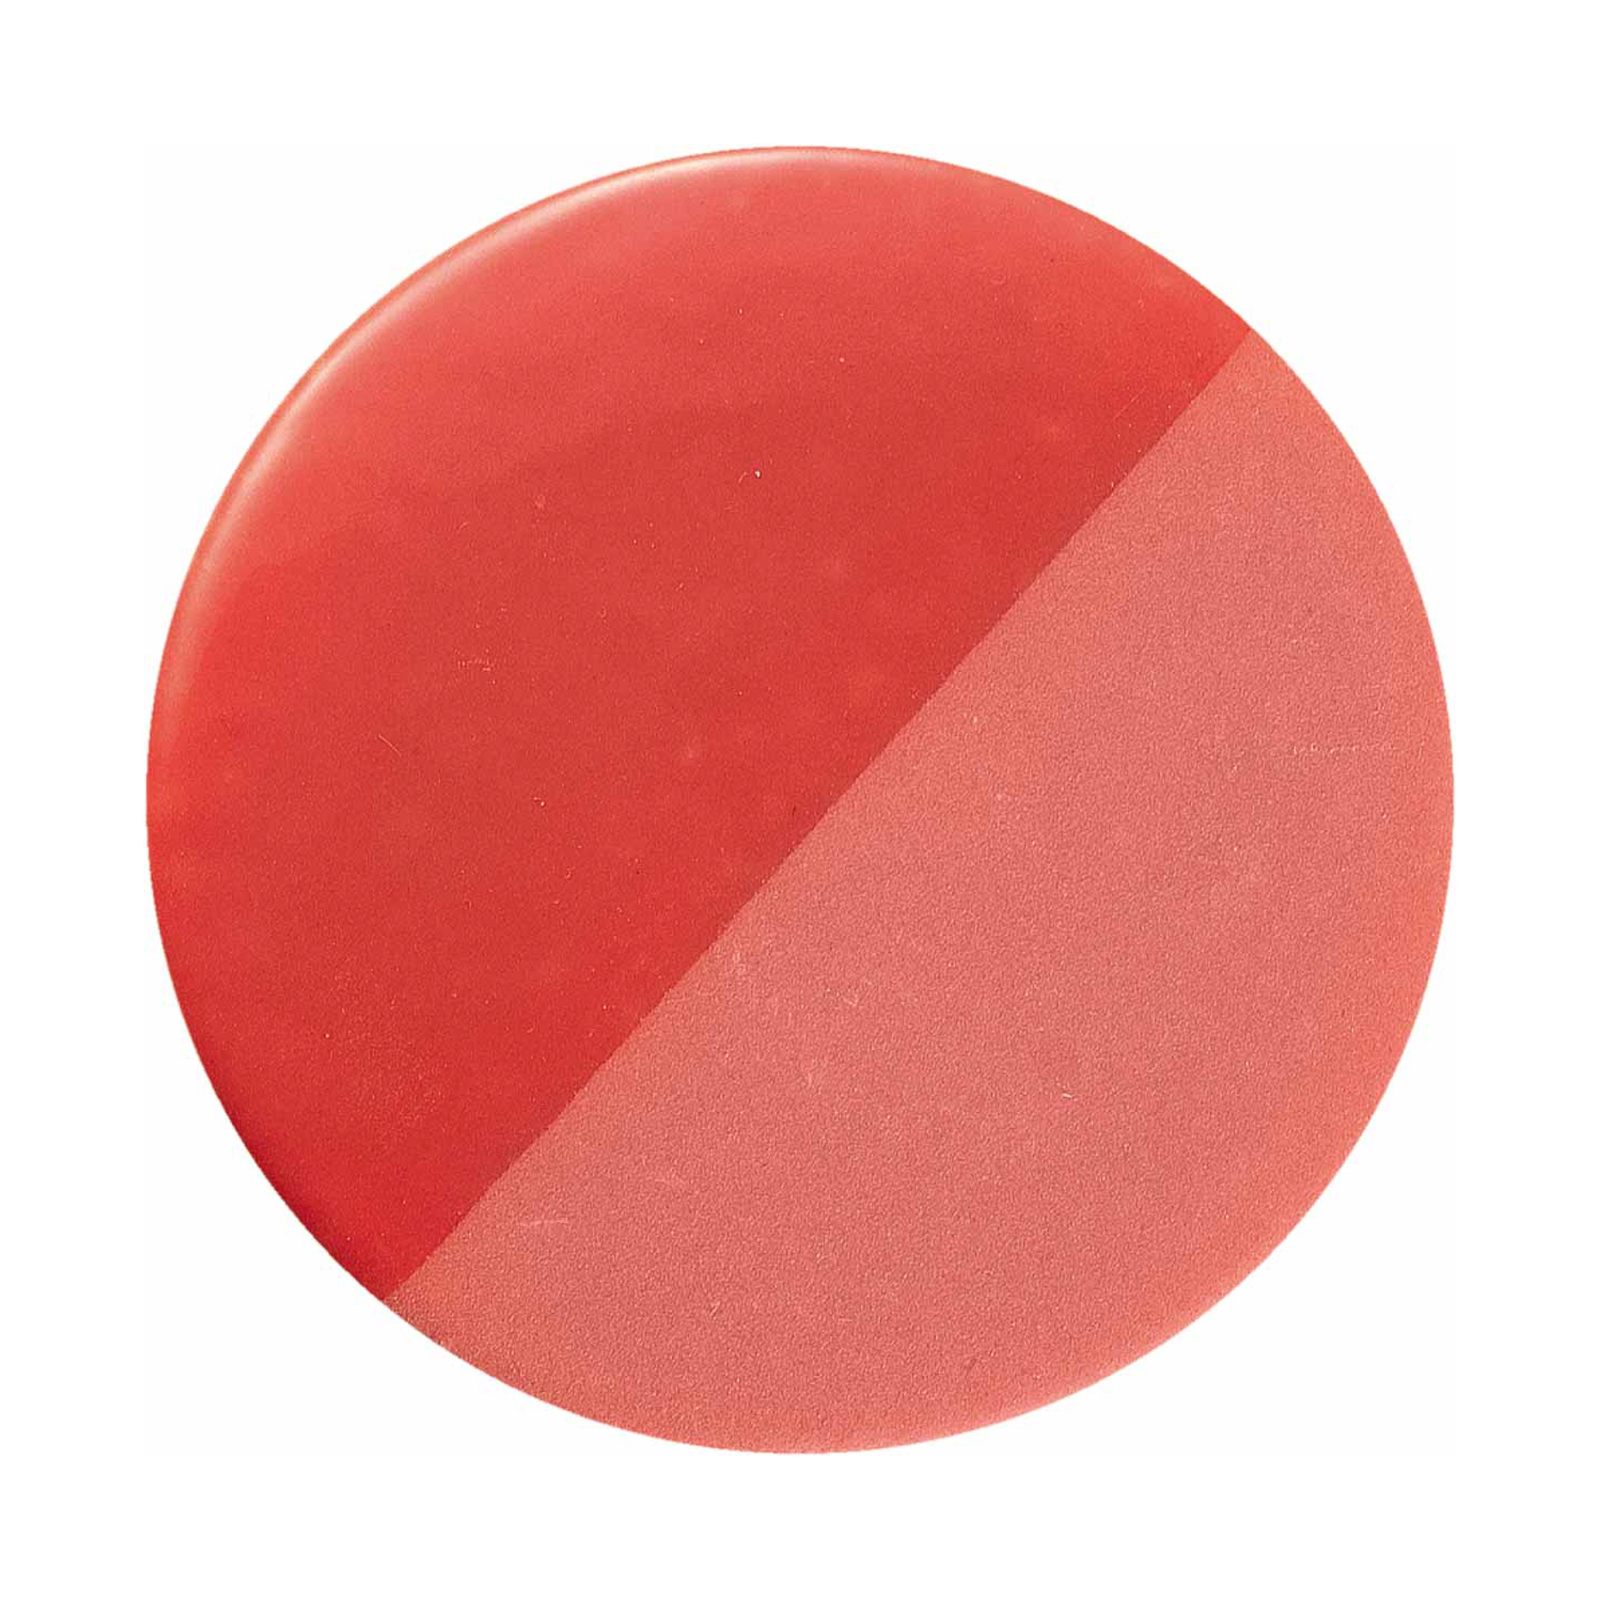 Lampa sufitowa PI, błyszcząca/matowa, Ø 40 cm, czerwona